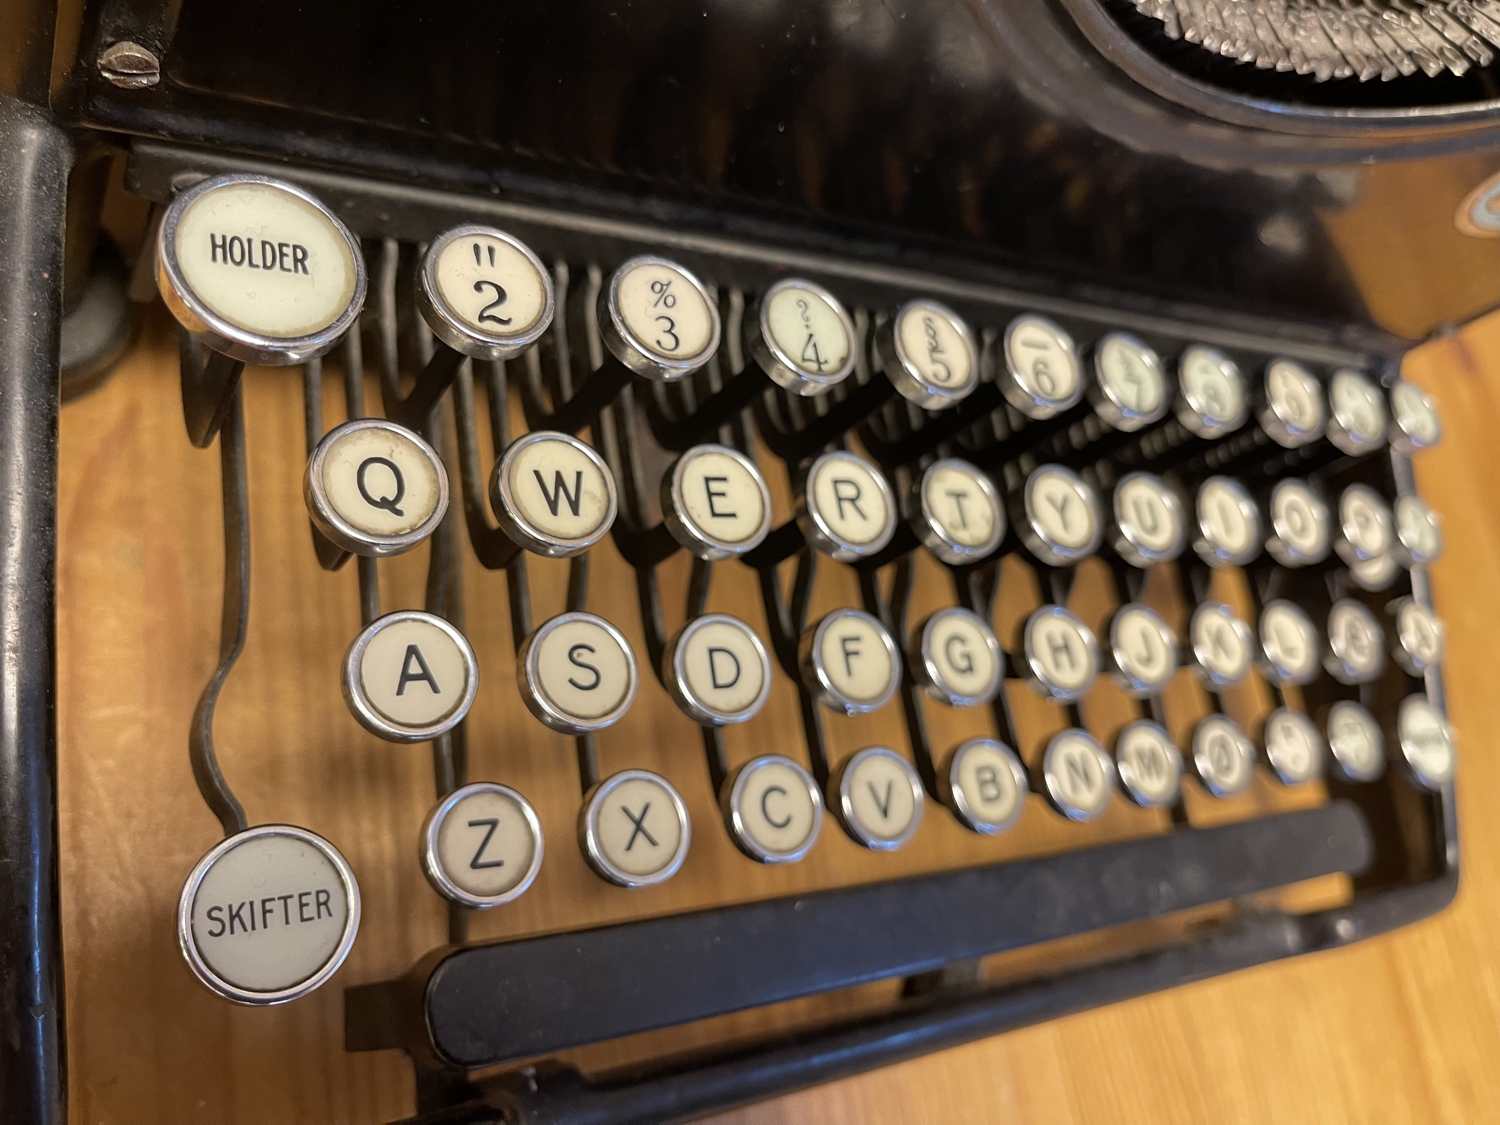 Clavier QWERTY d'une ancienne machine à écrire, aux touches rondes, présentant chaque caractère en noir sur fond blanc